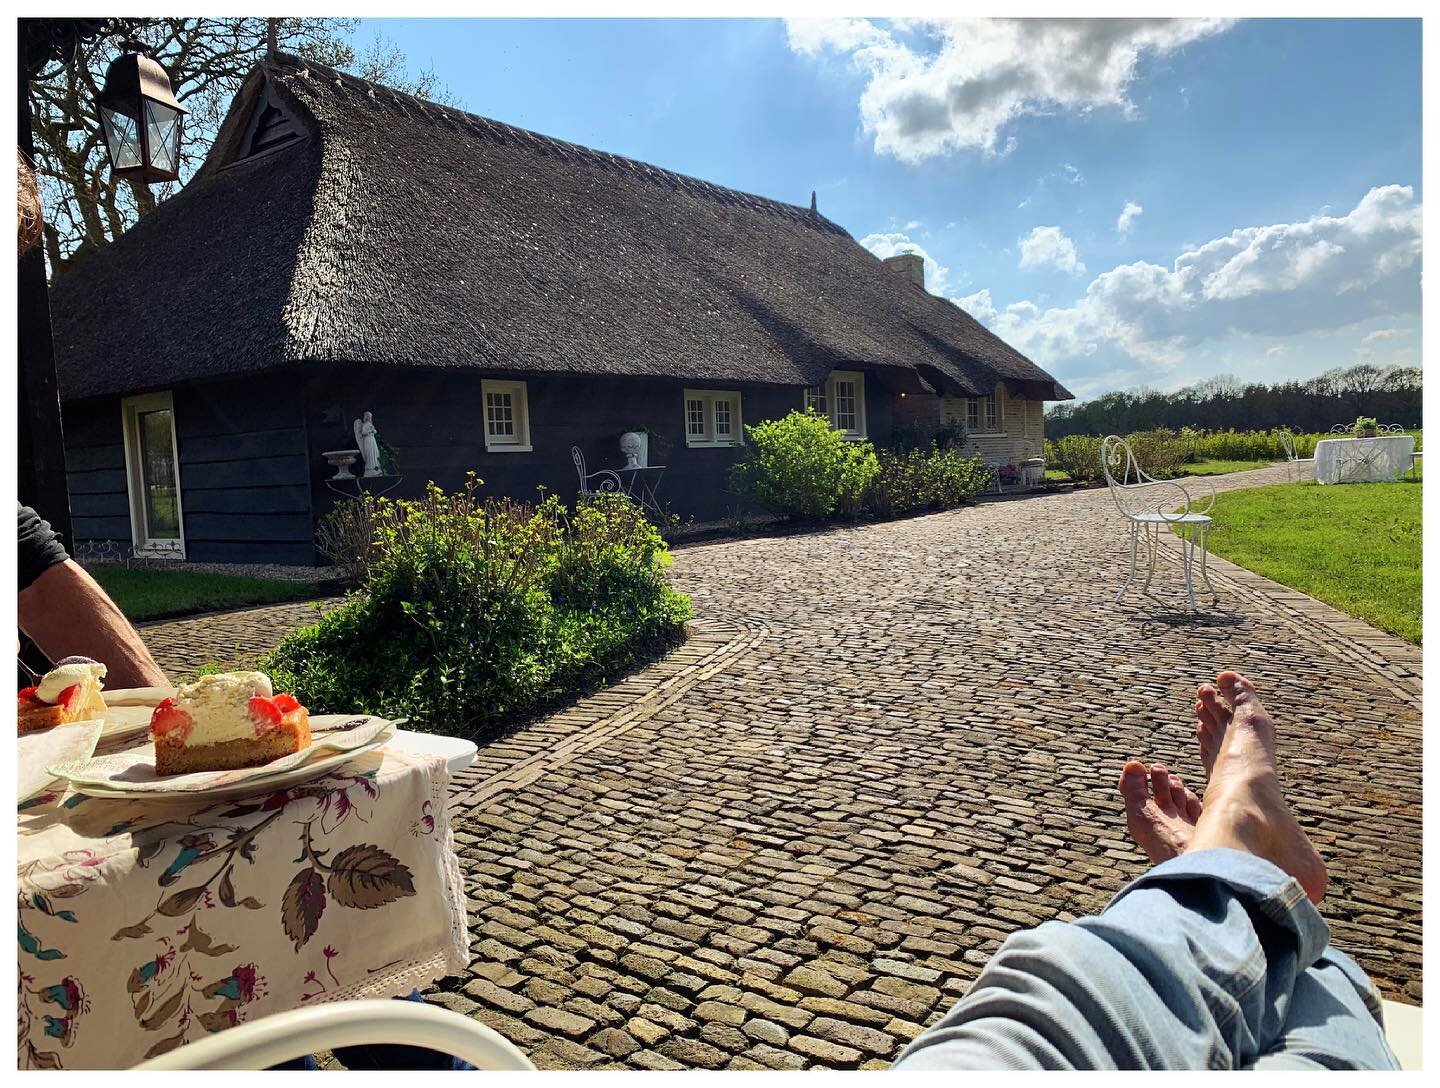 If you need a short break....Koep on tour @ Drenthe  #effebijkomen #mazzelmethetweer #uitineigenland #Vledder #drentheitis #landgoedvledderhof #boerderijtjevoorjezelf #weguitdestad #holland #rust #groenerwordthetniet #landgoed #buitenleven #wandelen 